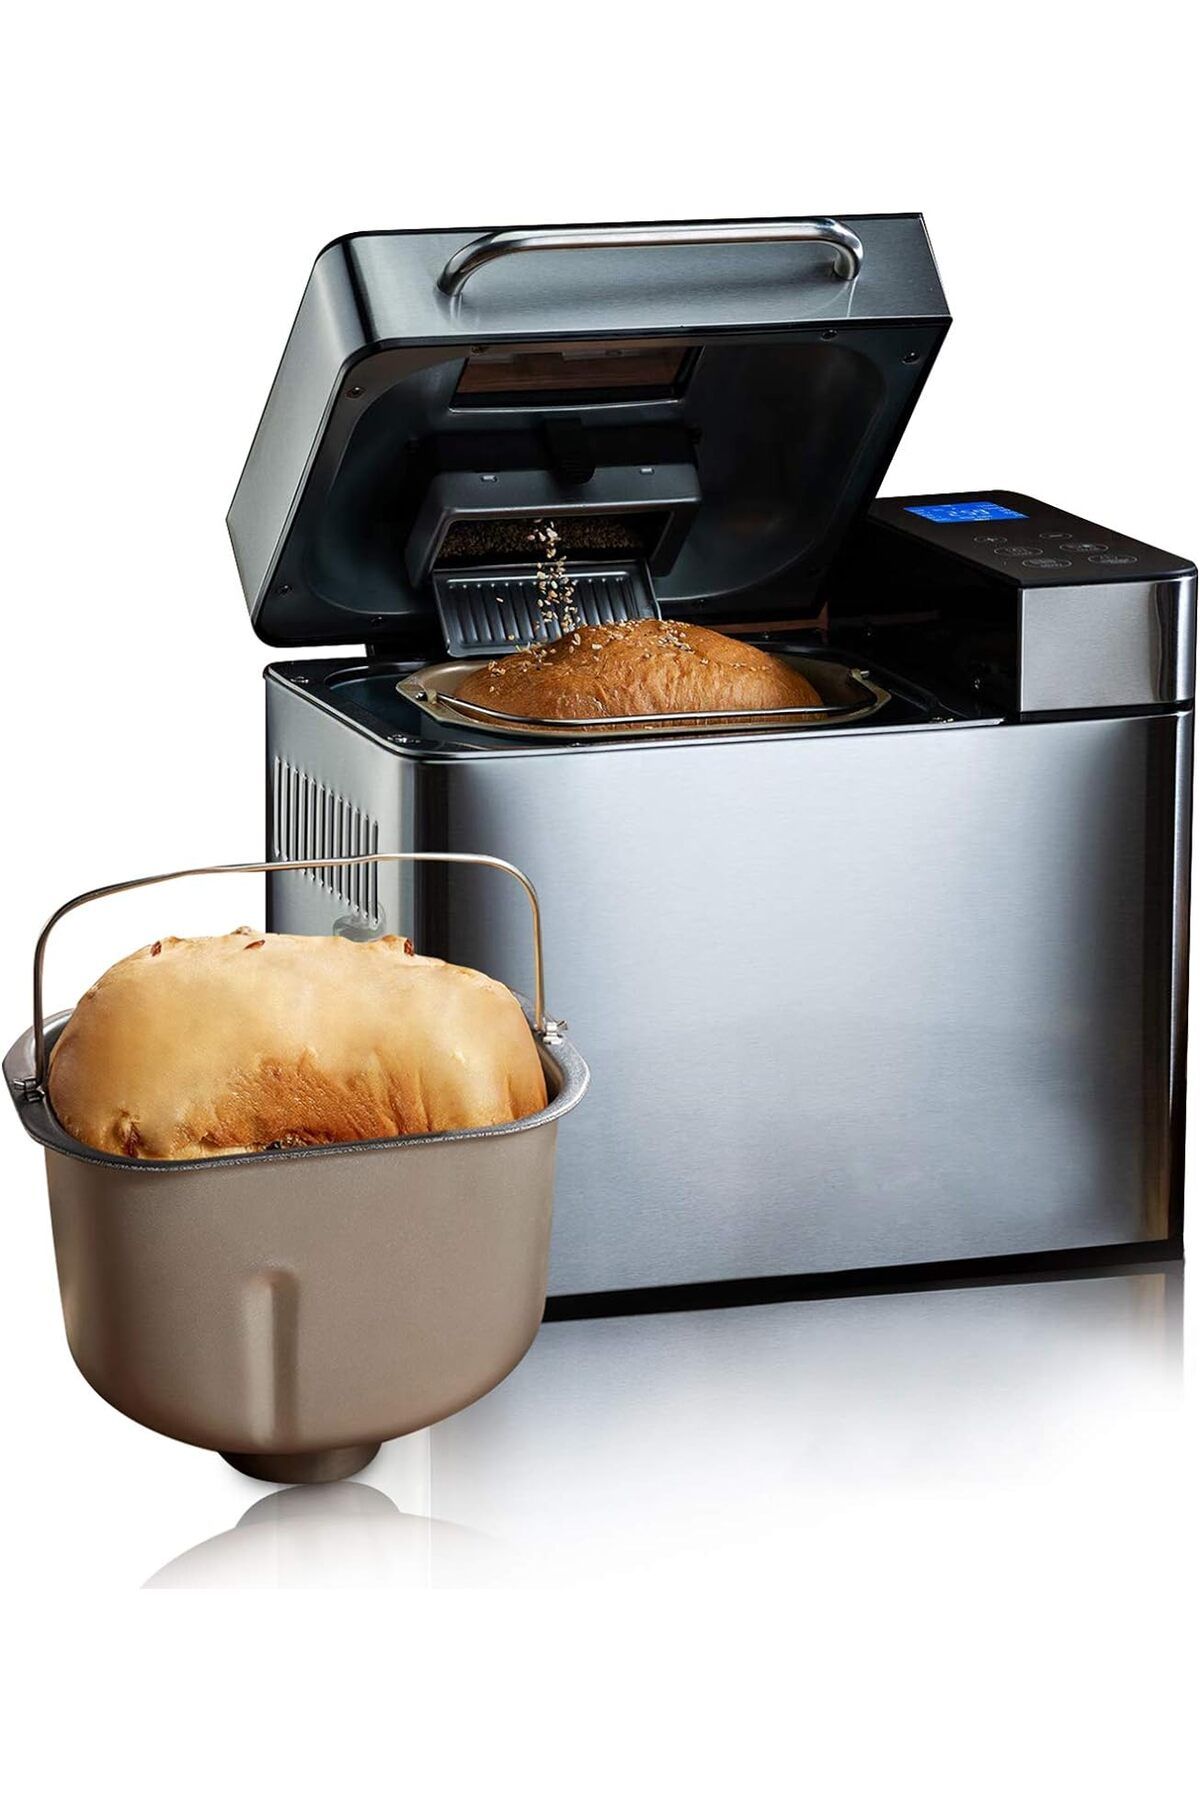 COOCHEER Paslanmaz Çelik Ekmek Makinesi 19 Önceden Ayarlanmış Program, Ekmek ve Tatlılar için, 500-1000g